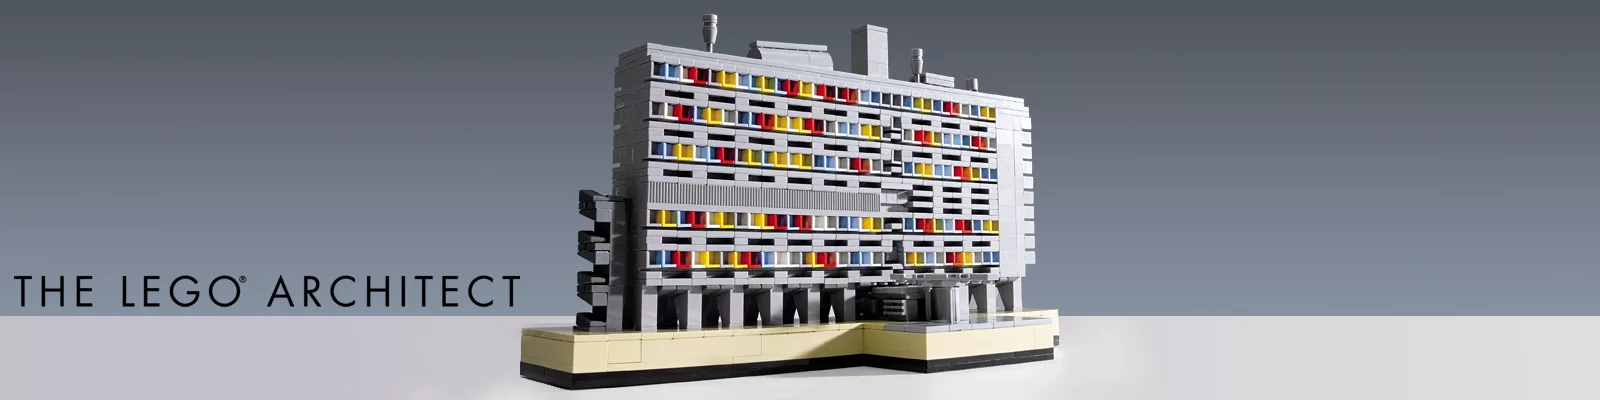 Architetto con i LEGO